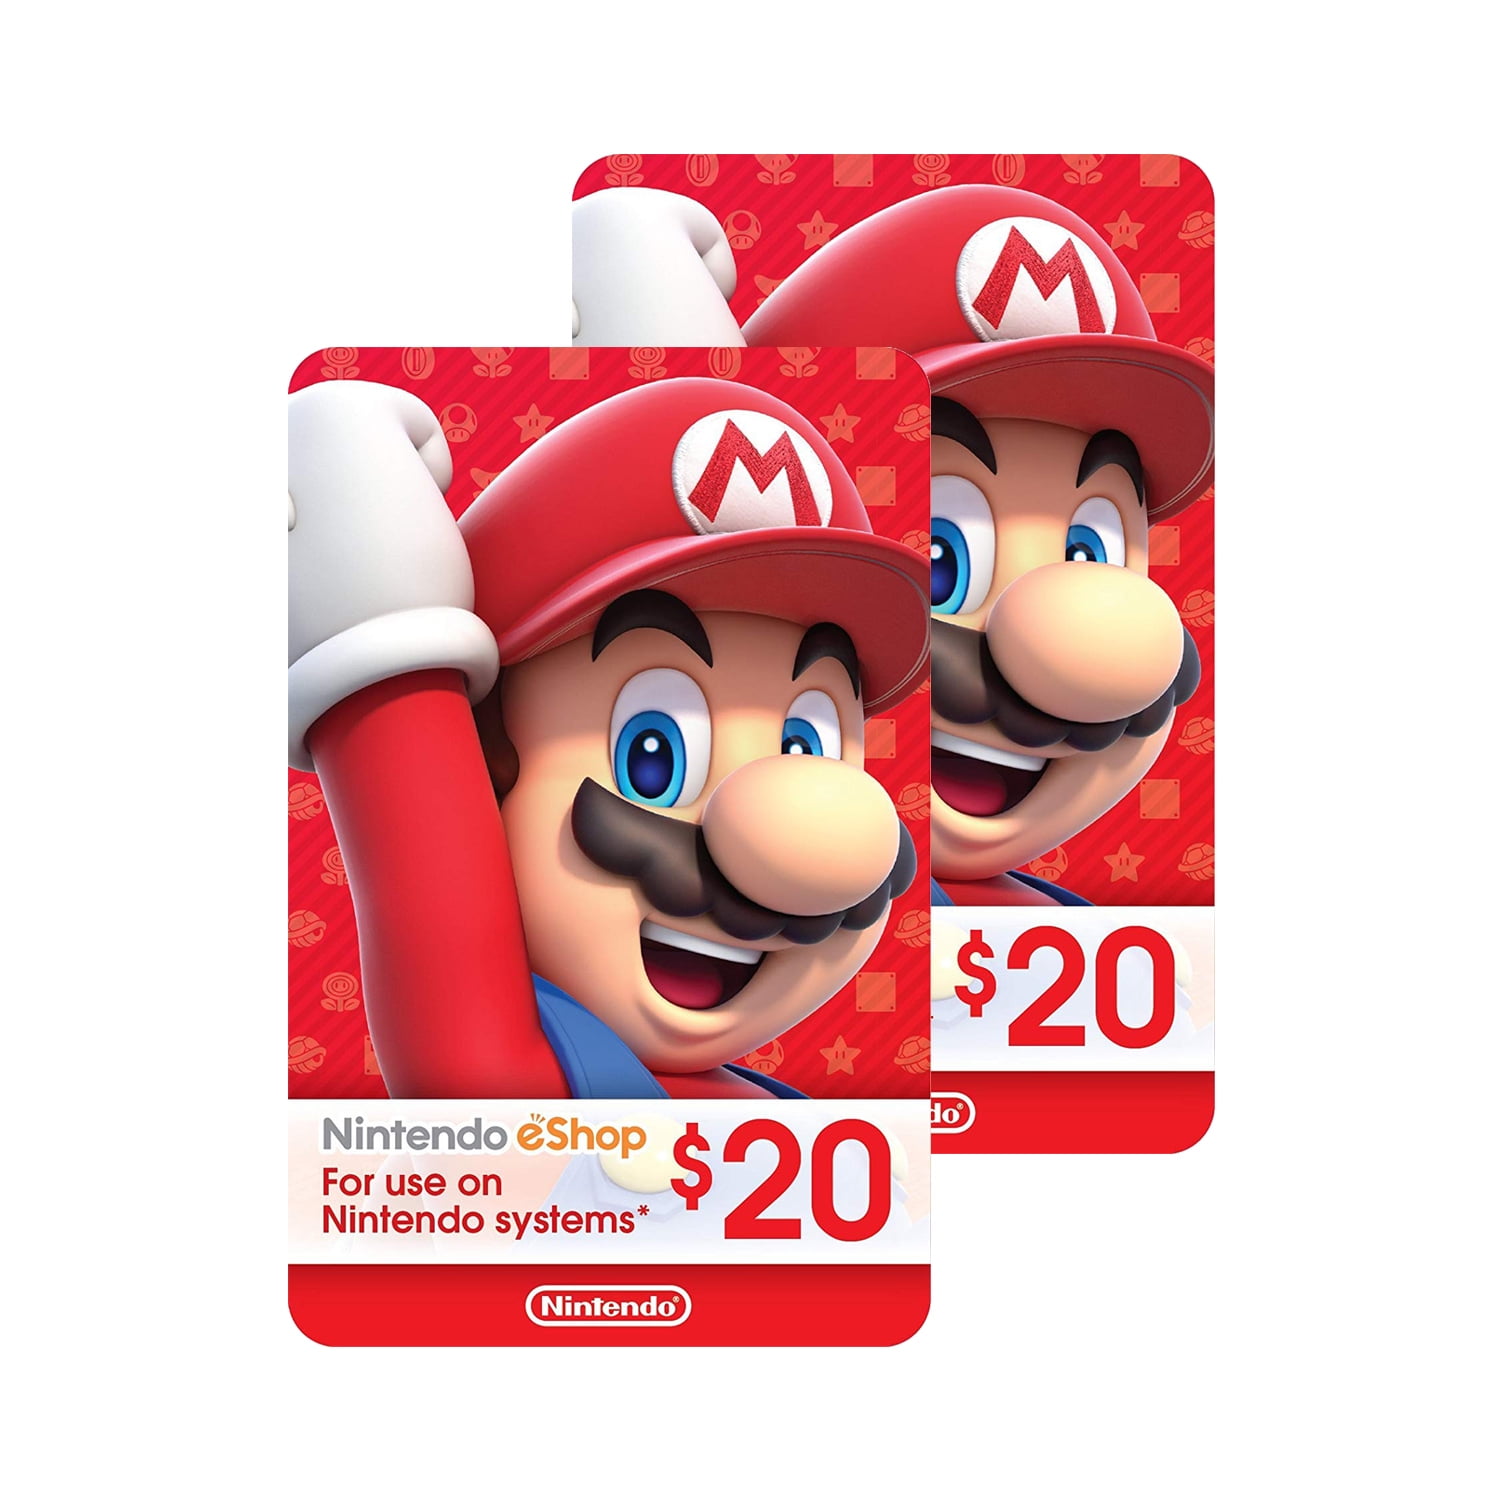 Buy Nintendo eShop Cards Compare Prices